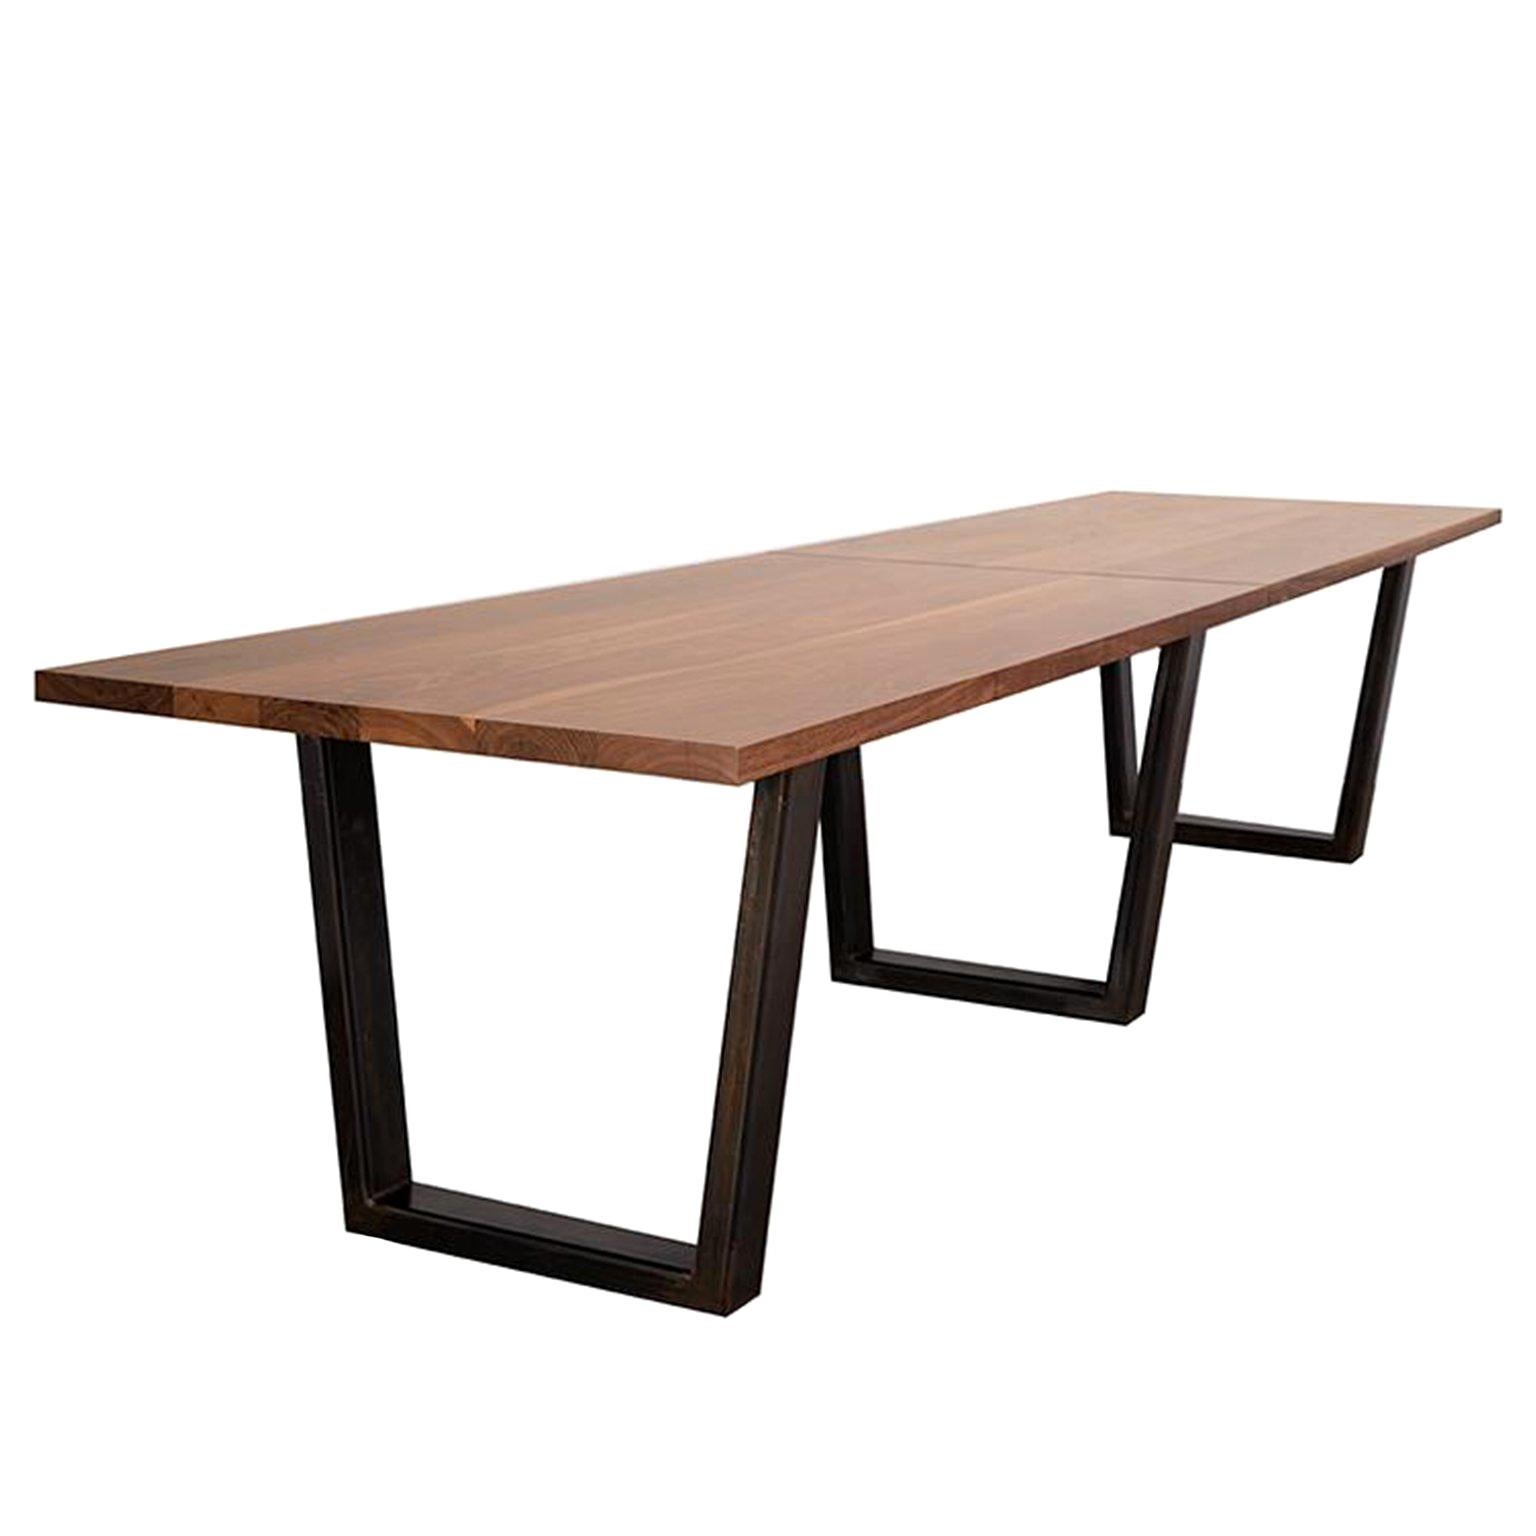 Table de conférence "Taper" personnalisée avec plateau en bois massif et base en métal